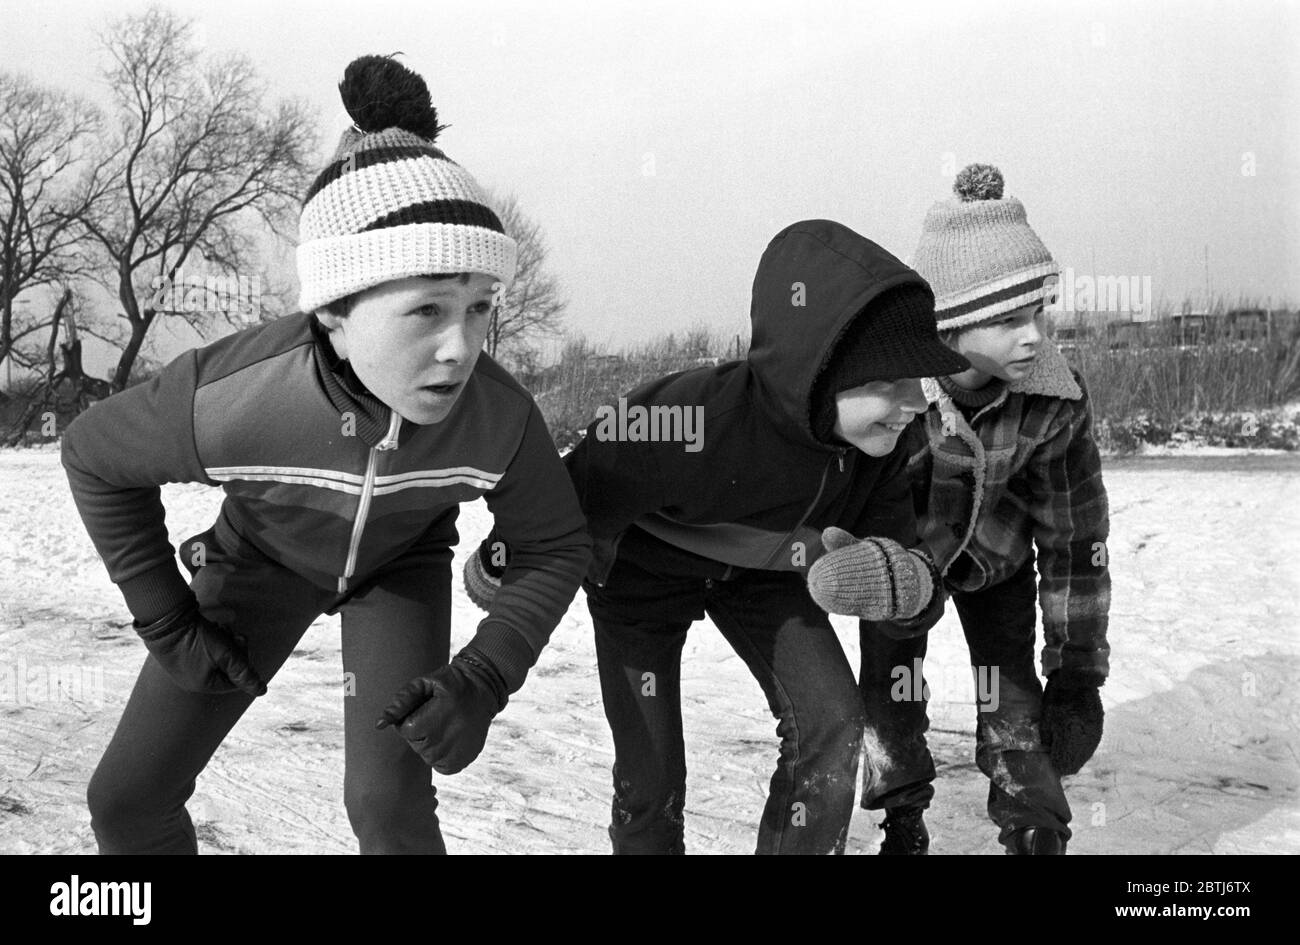 27 febbraio 1985, Sassonia, Torgau: Medaglie per i primi tre. I giovani pattinatori di velocità prendono parte alla Winter Partakiade di Torgau all'inizio degli anni '80. Data esatta di ammissione non nota. Foto: Volkmar Heinz/dpa-Zentralbild/ZB Foto Stock